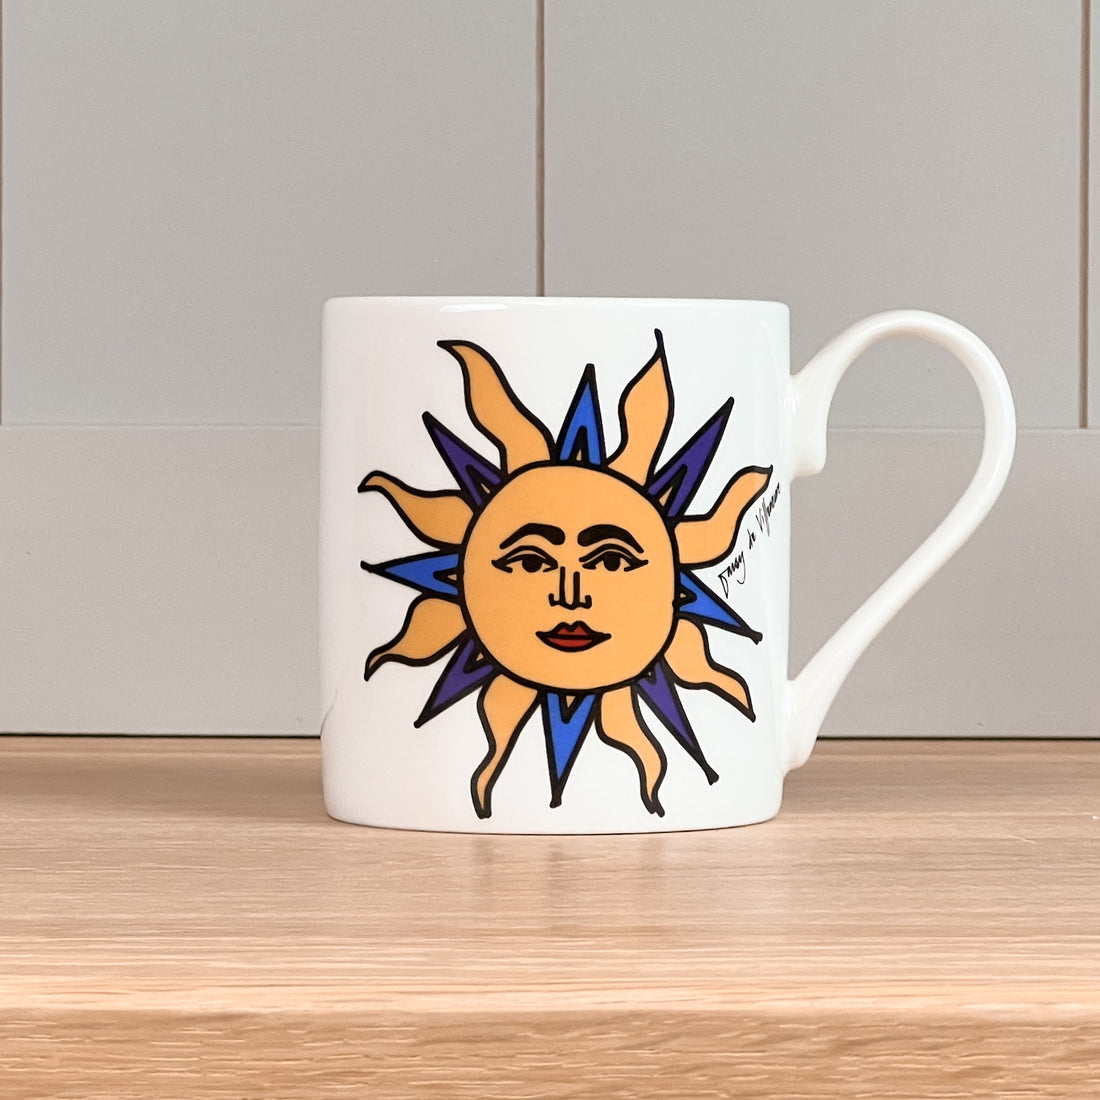 Sun Mug